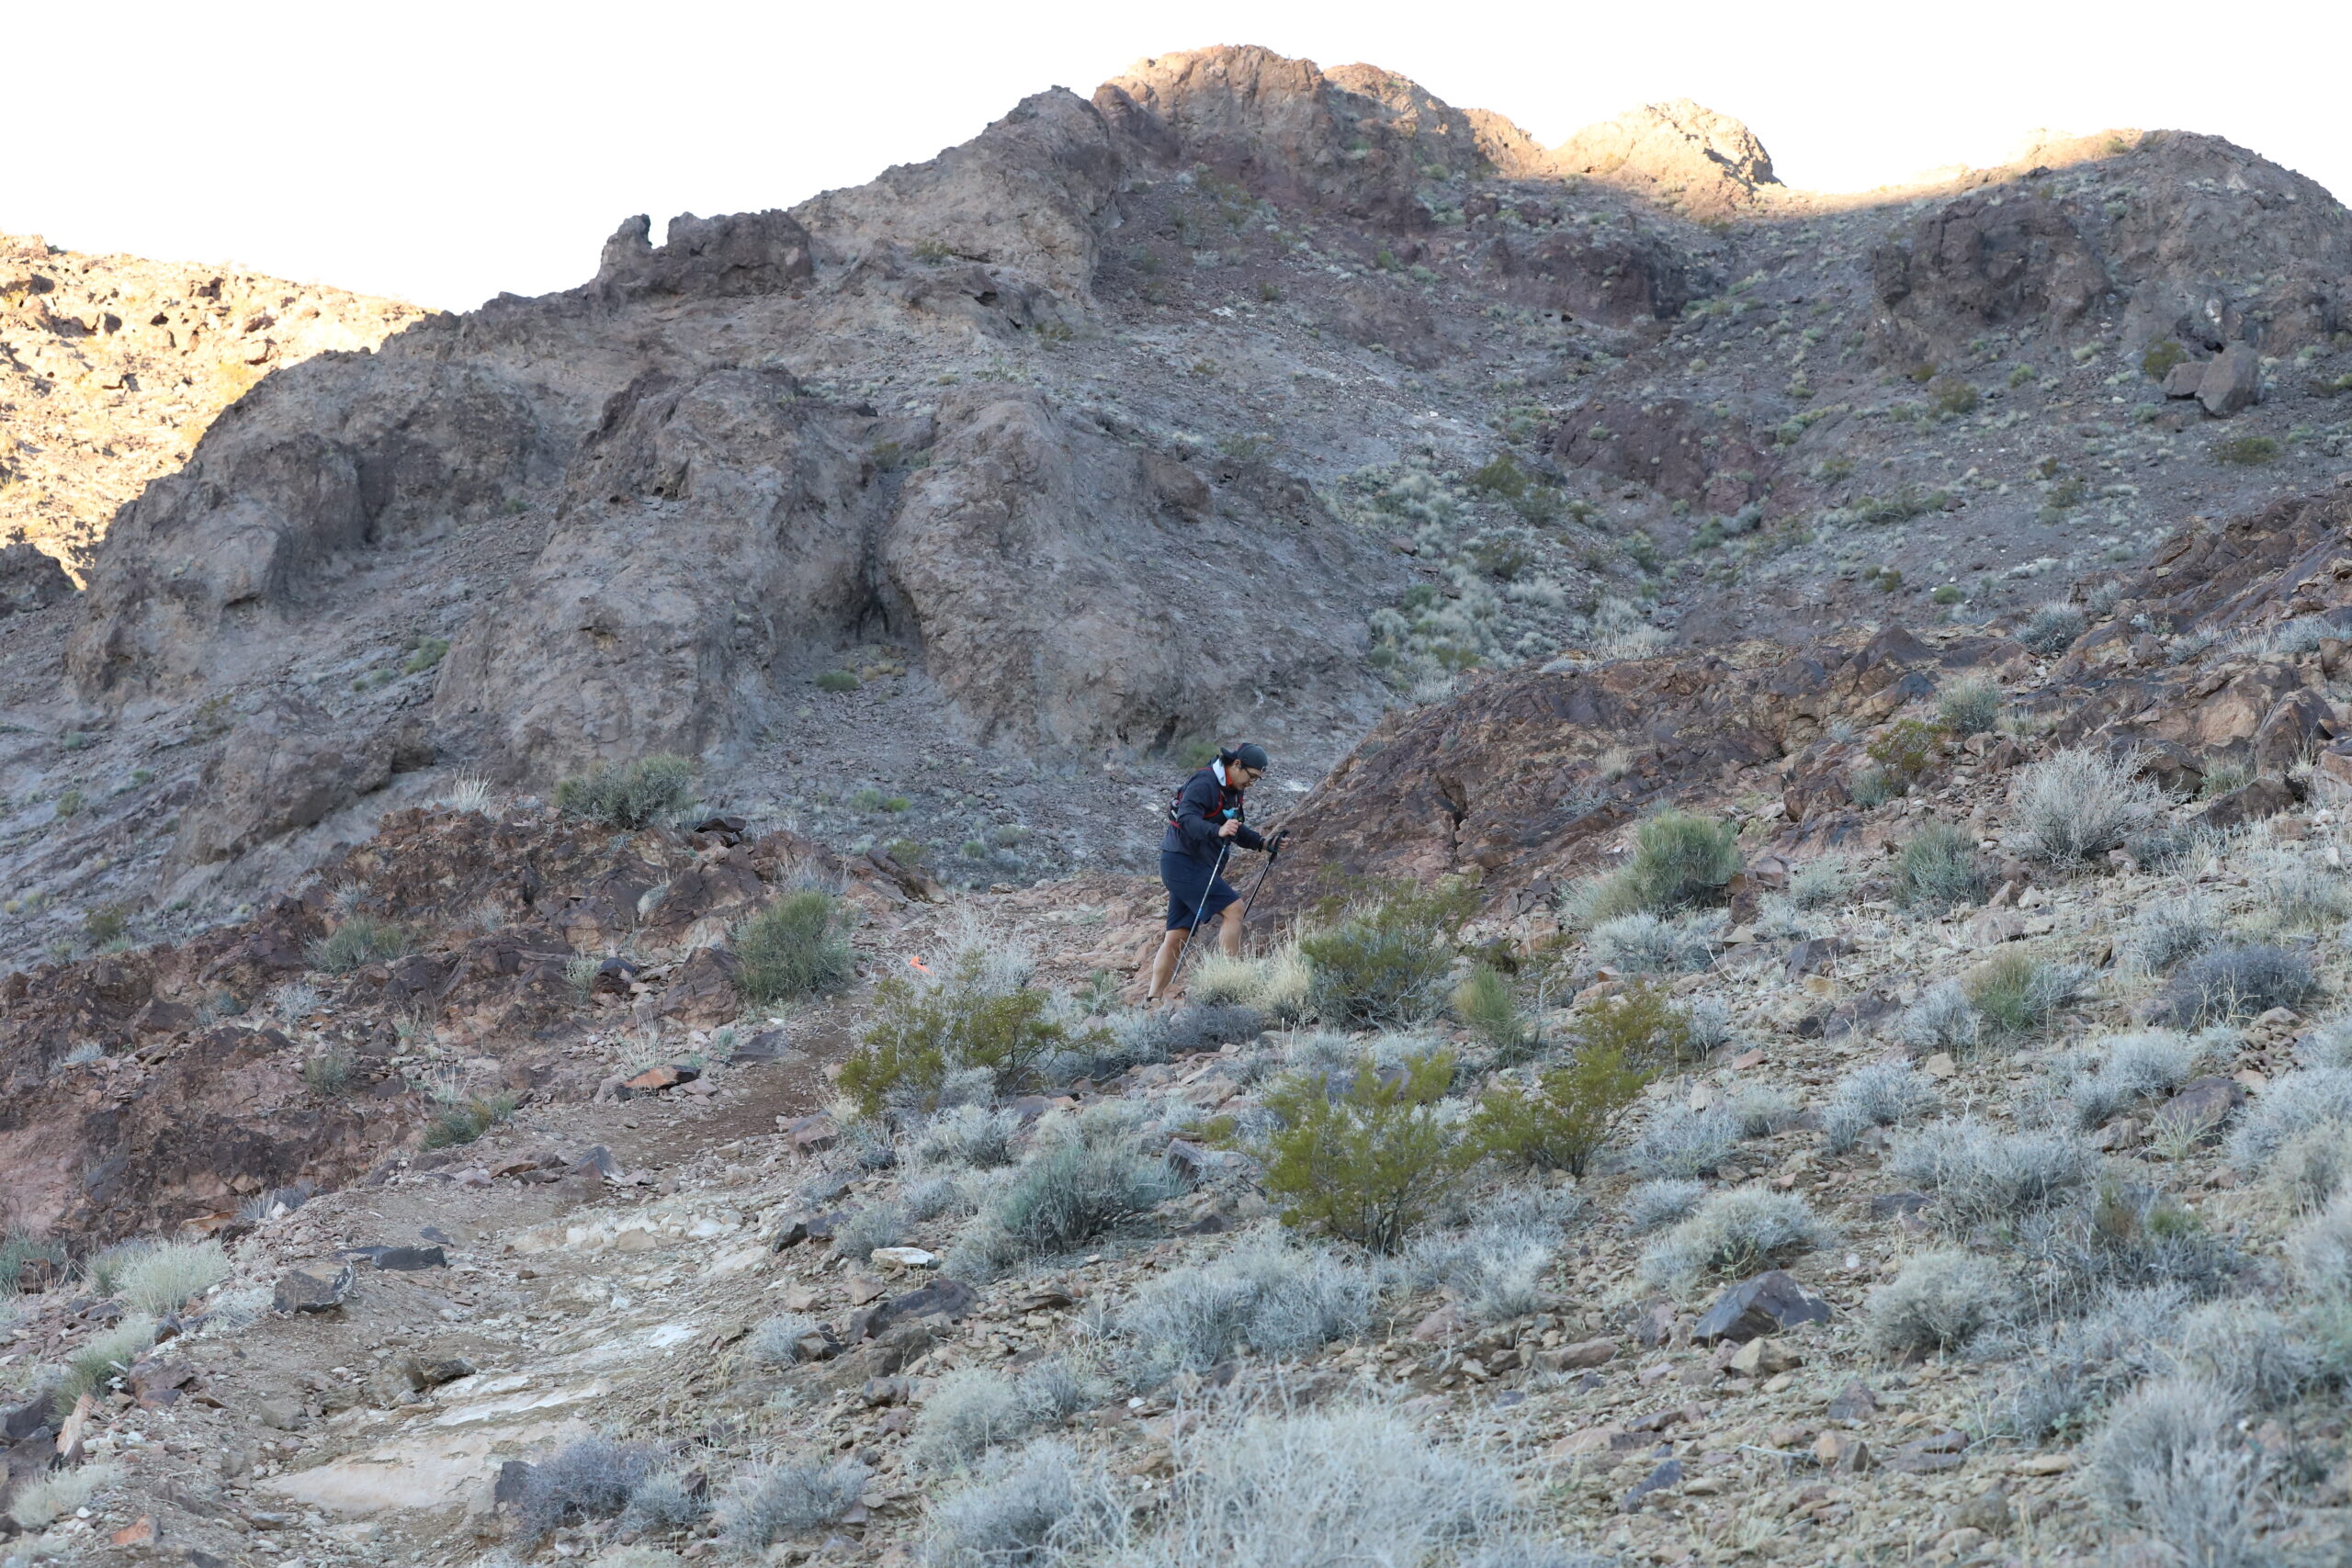 Trail runner running the bootleg boogie in the Mojave desert, Nevada.